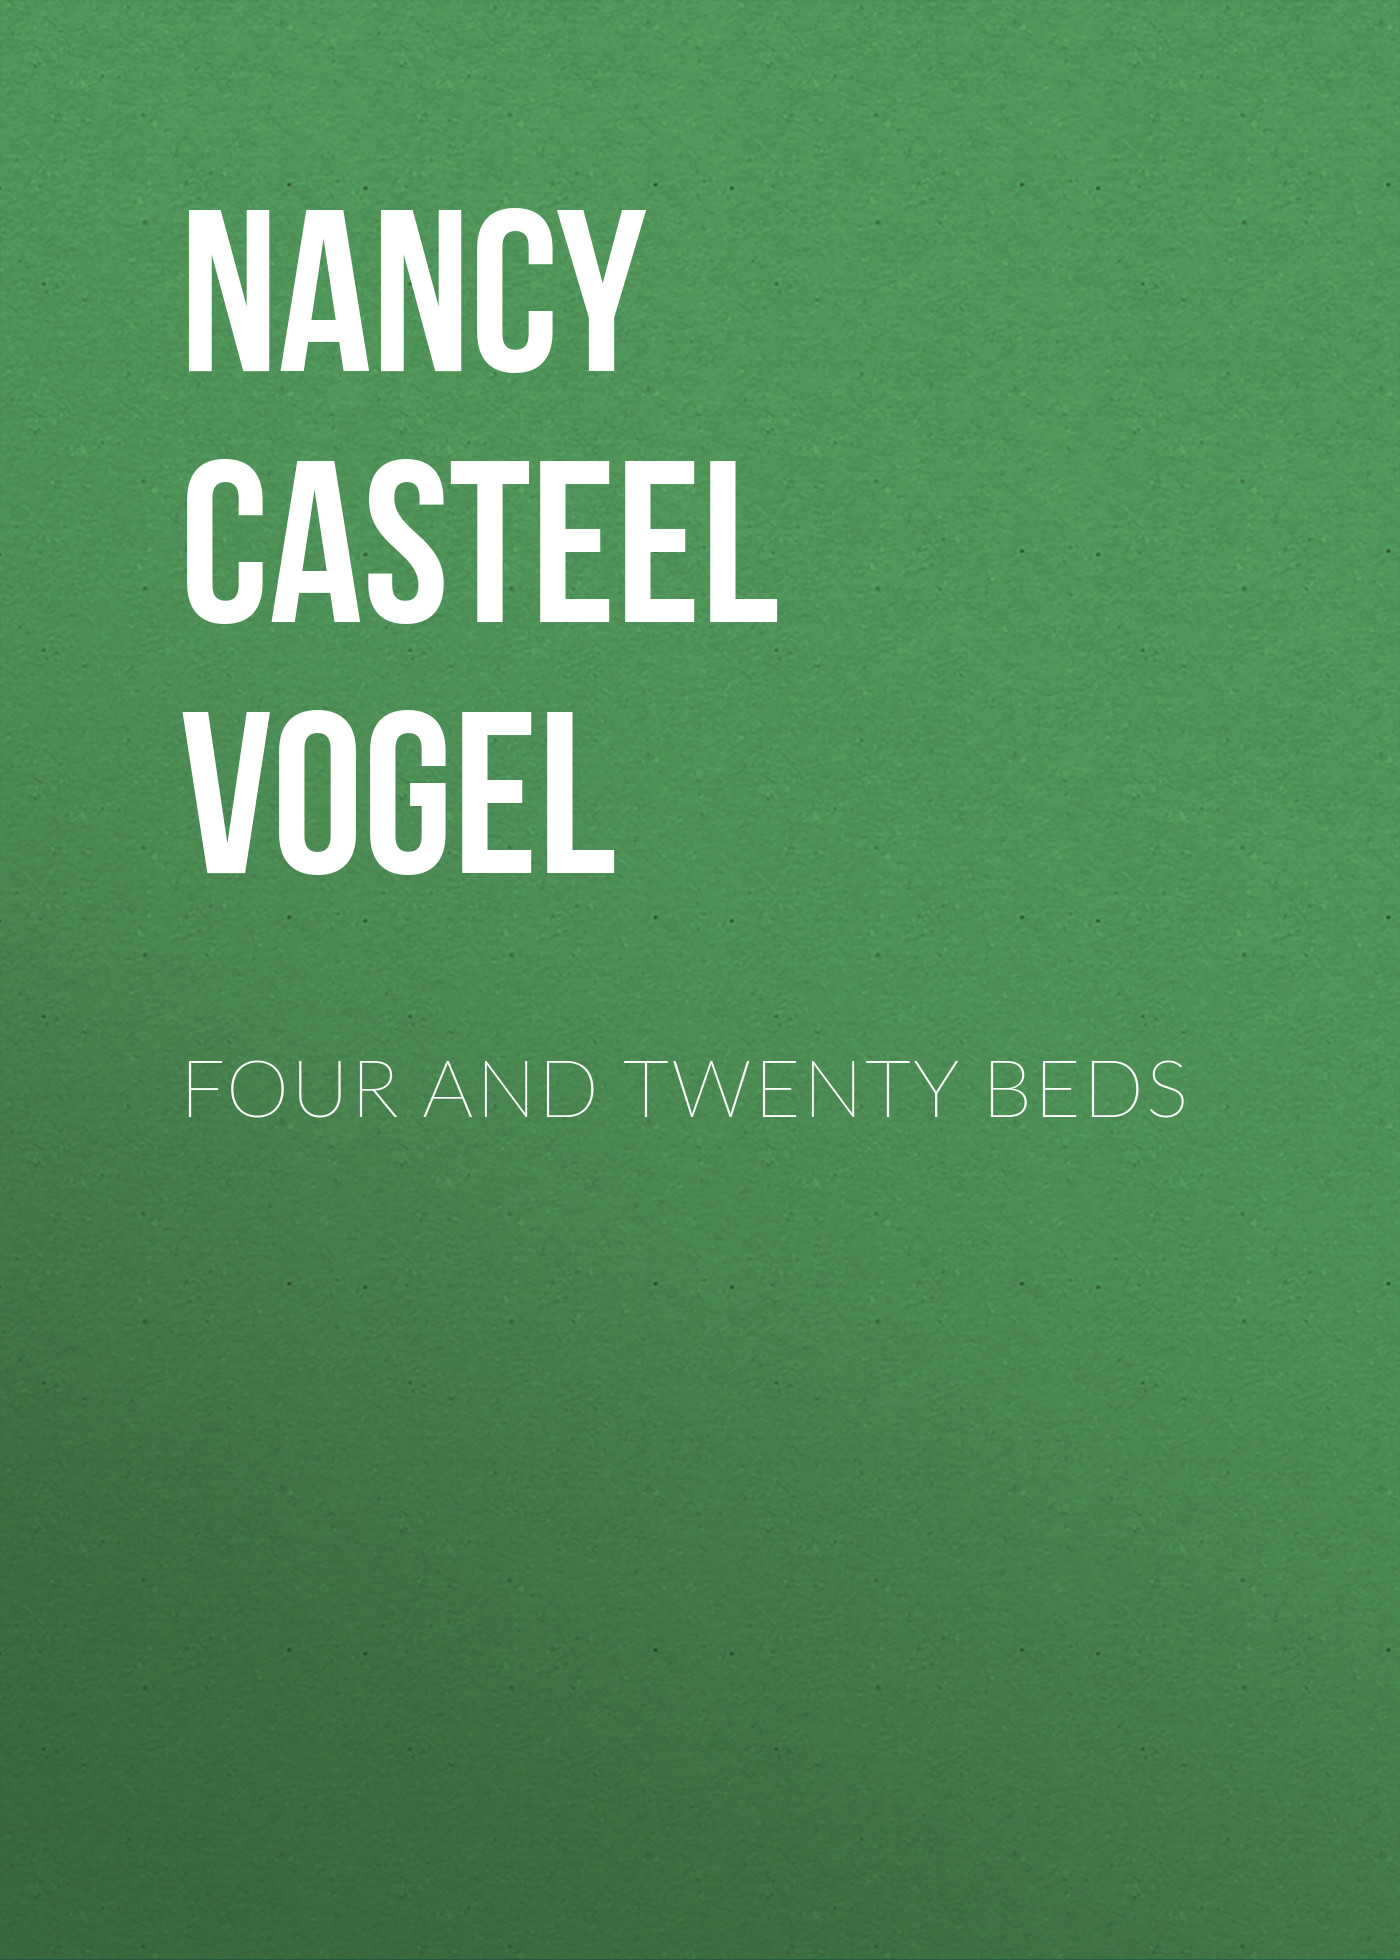 Книга Four and Twenty Beds из серии , созданная Nancy Vogel, может относится к жанру Зарубежная старинная литература, Зарубежная прикладная и научно-популярная литература. Стоимость электронной книги Four and Twenty Beds с идентификатором 34283024 составляет 0 руб.